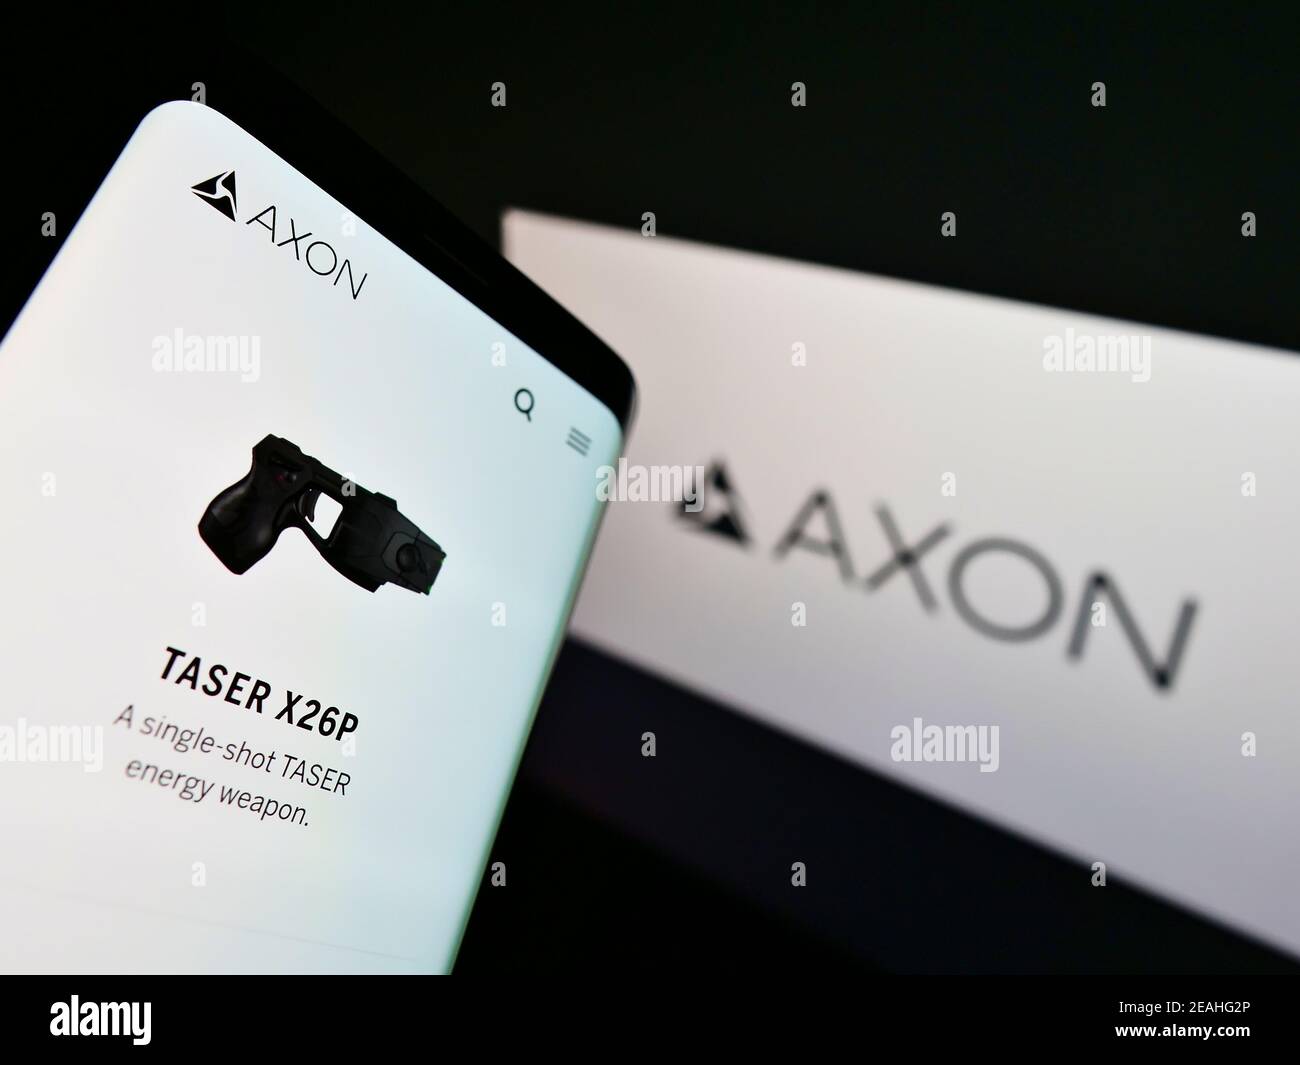 Handy mit Produkt-Website des amerikanischen Waffenproduzenten Axon Enterprise auf dem Bildschirm mit Business-Logo. Konzentrieren Sie sich auf die obere linke Seite des Handydisplays. Stockfoto